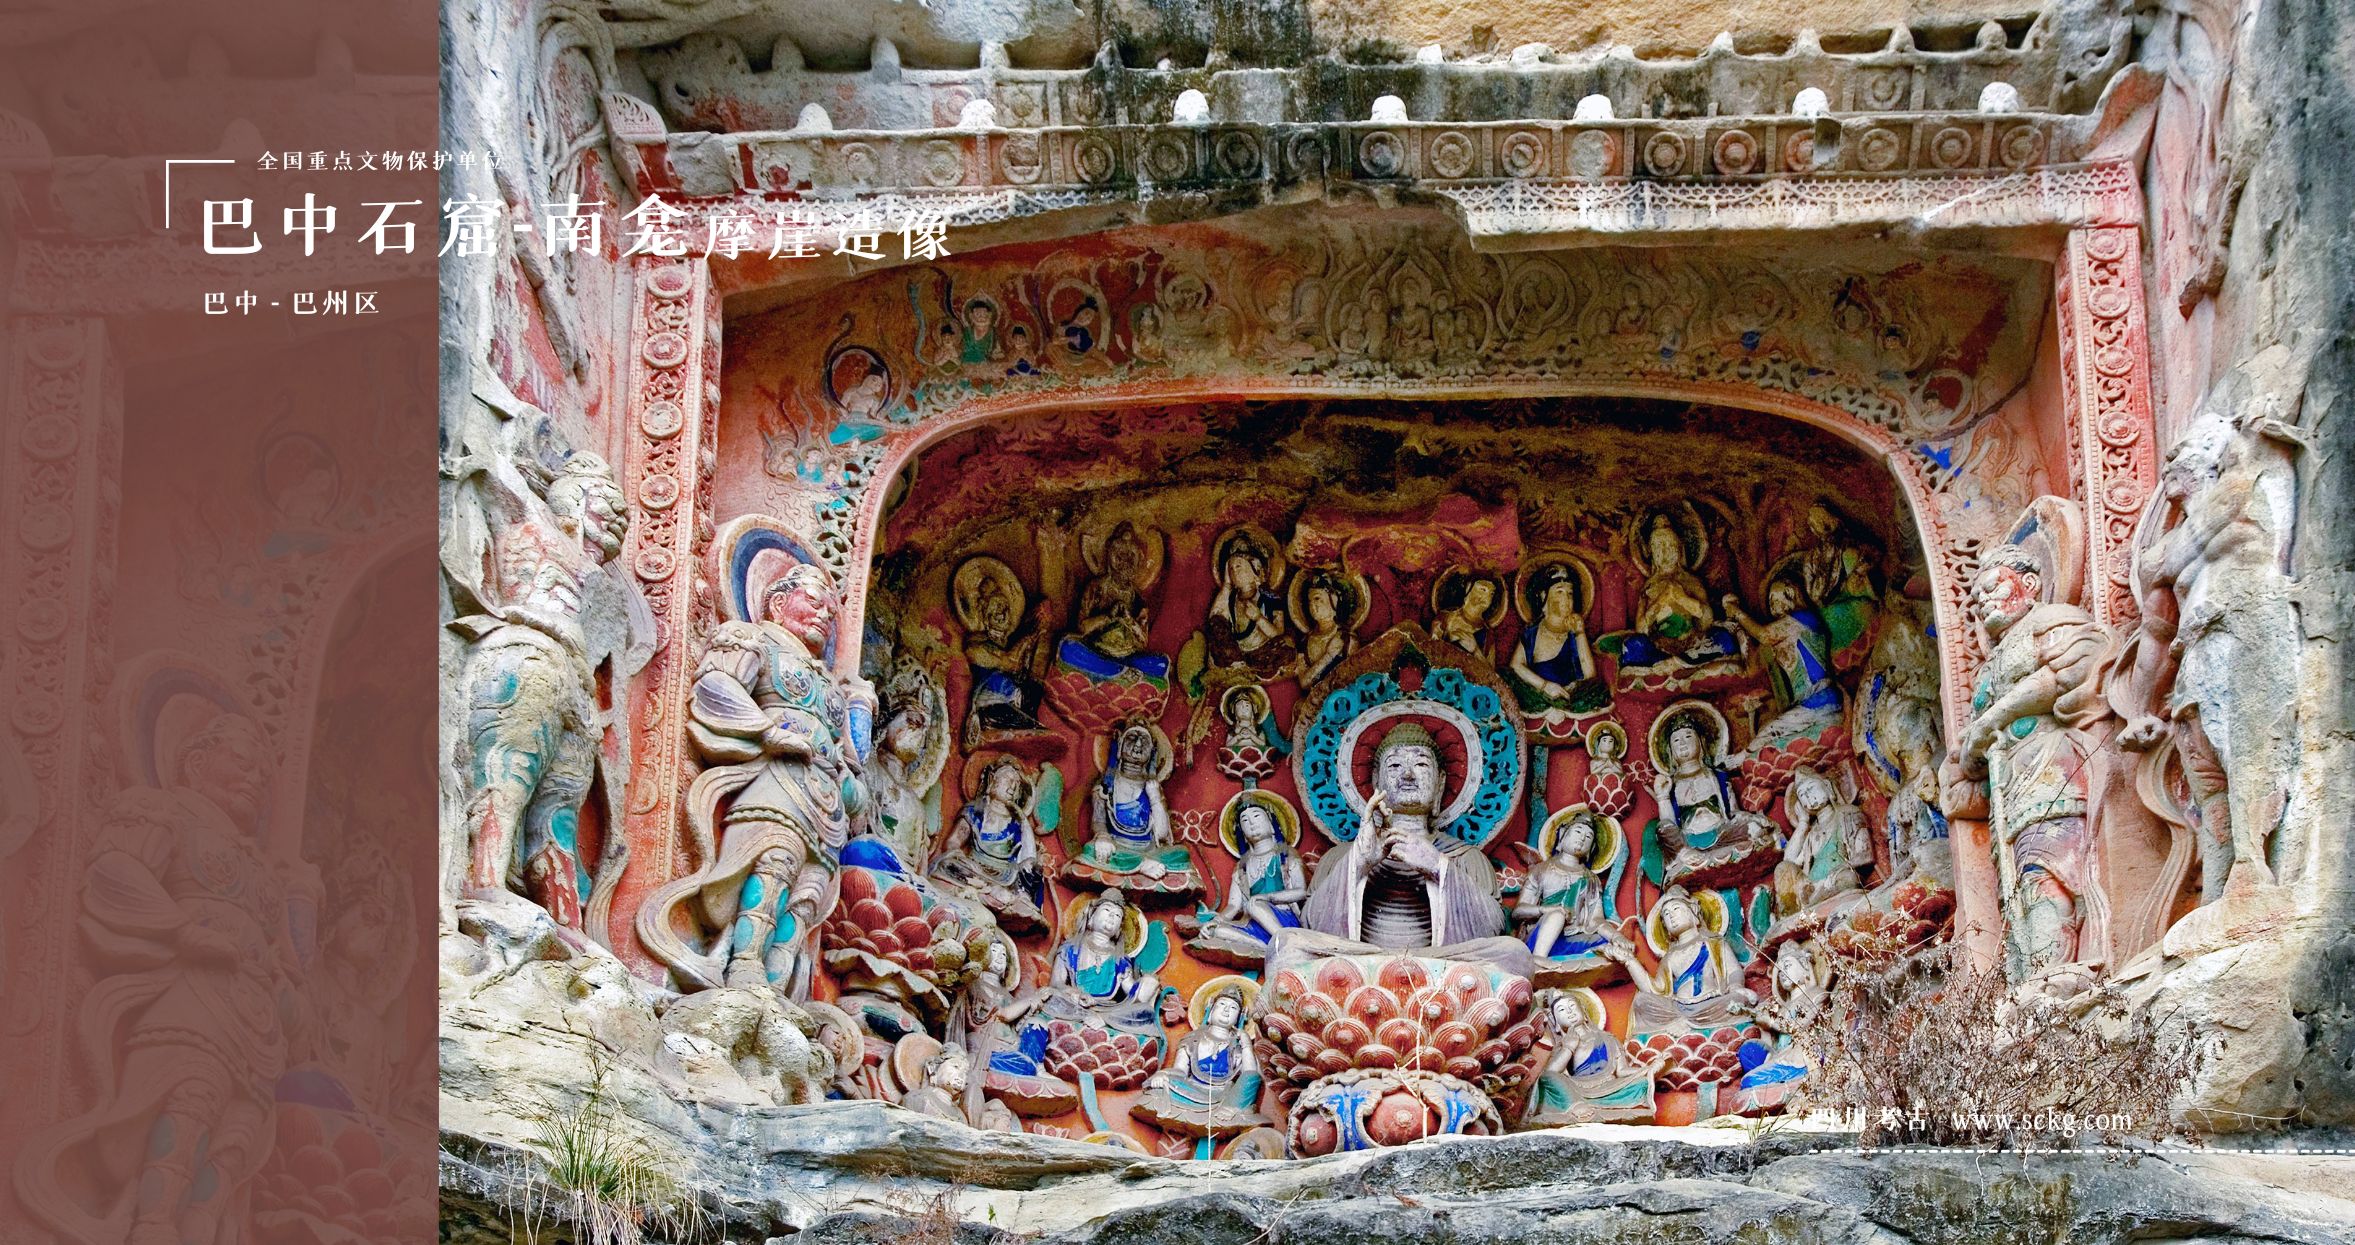 巴中石窟-南龛摩崖造像-第116龛阿弥陀佛与五十菩萨像